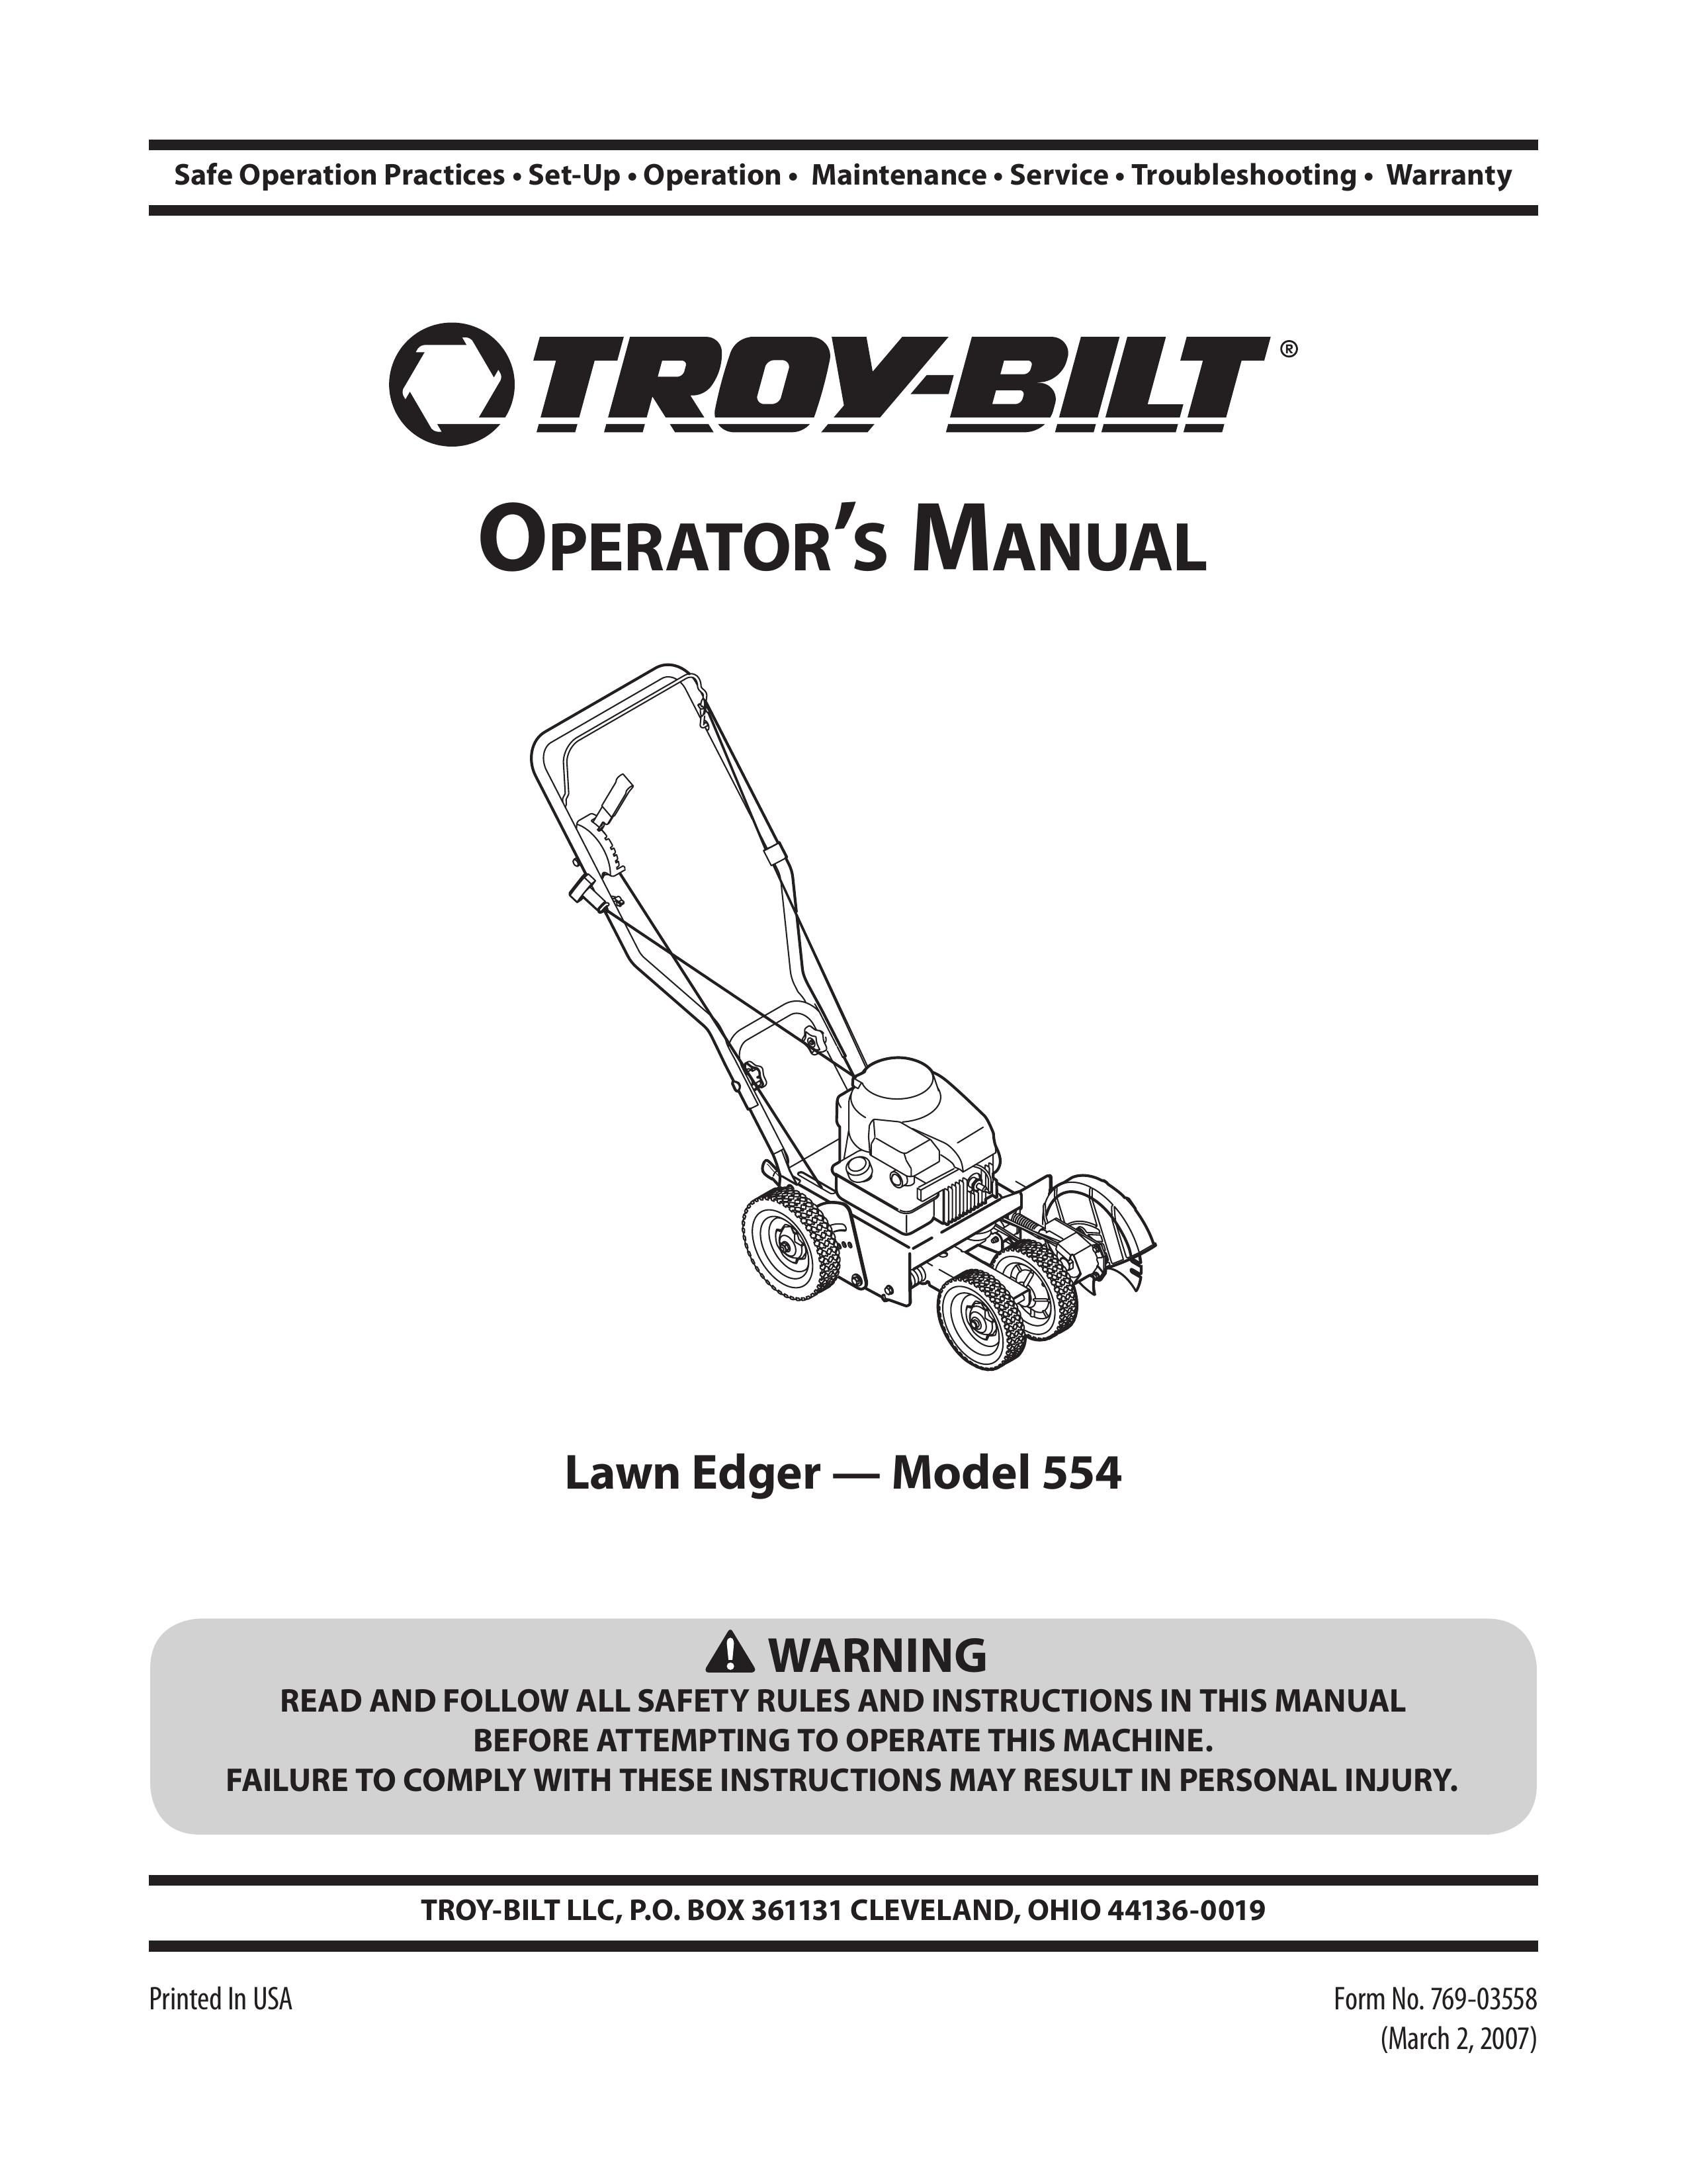 Troy-Bilt Model 554 Edger User Manual